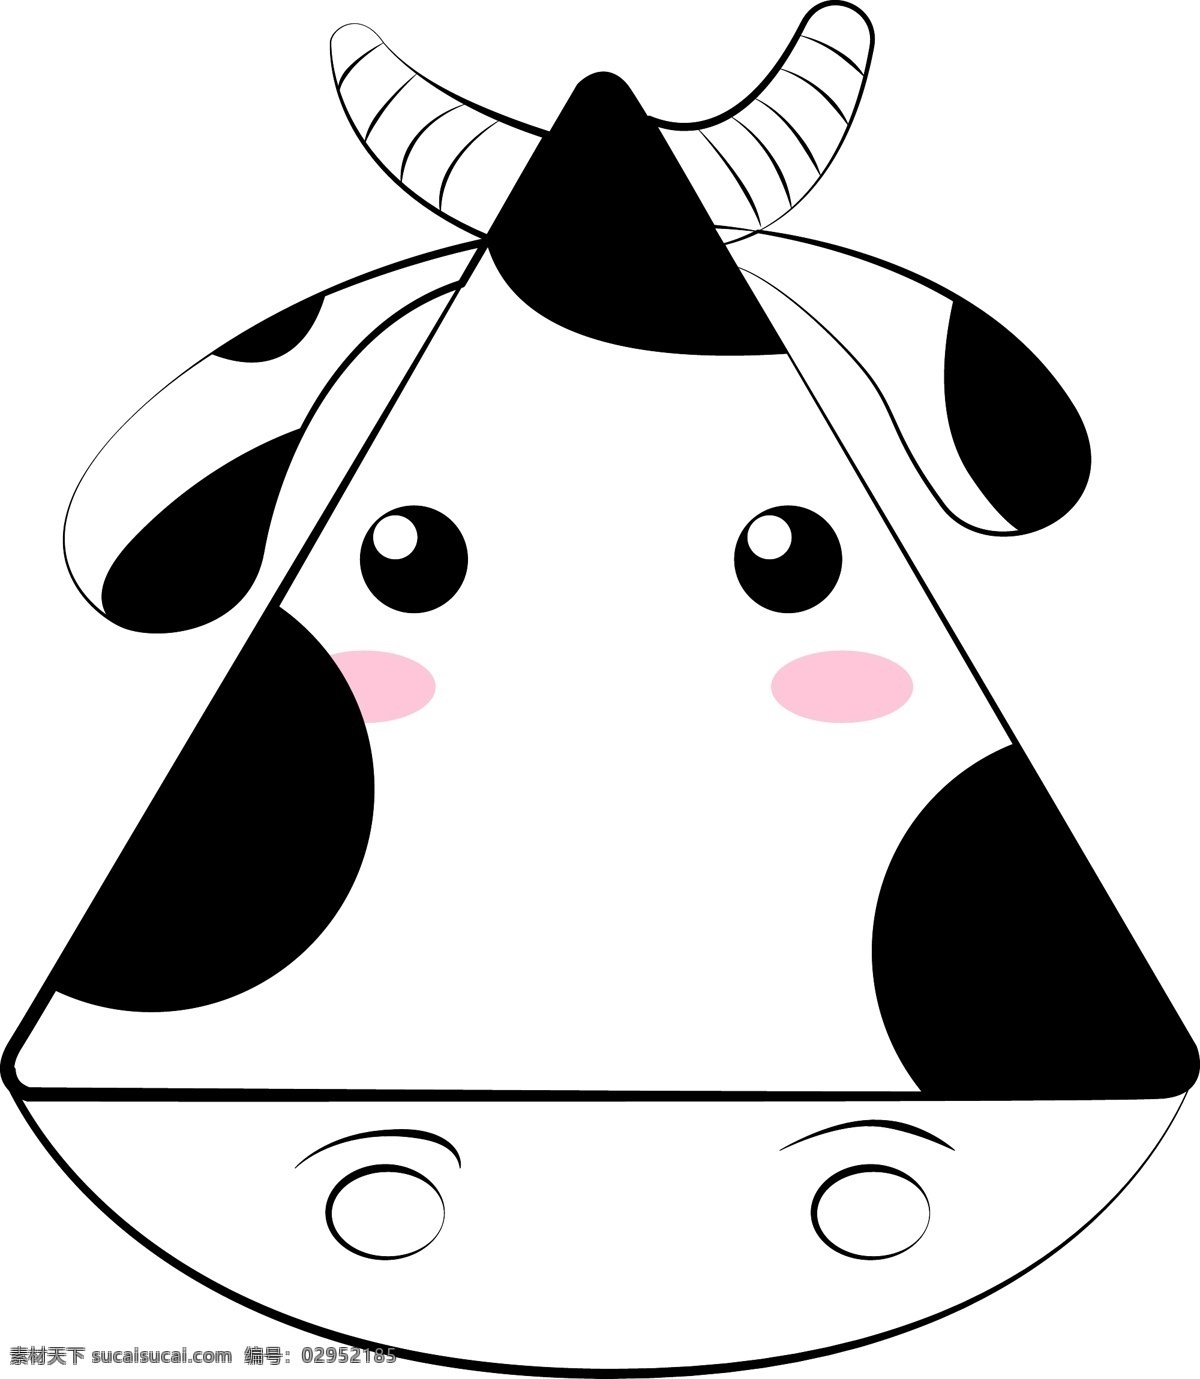 简约 手绘 三角形 奶牛 商用 动物 卡通 几何 简笔画 可爱